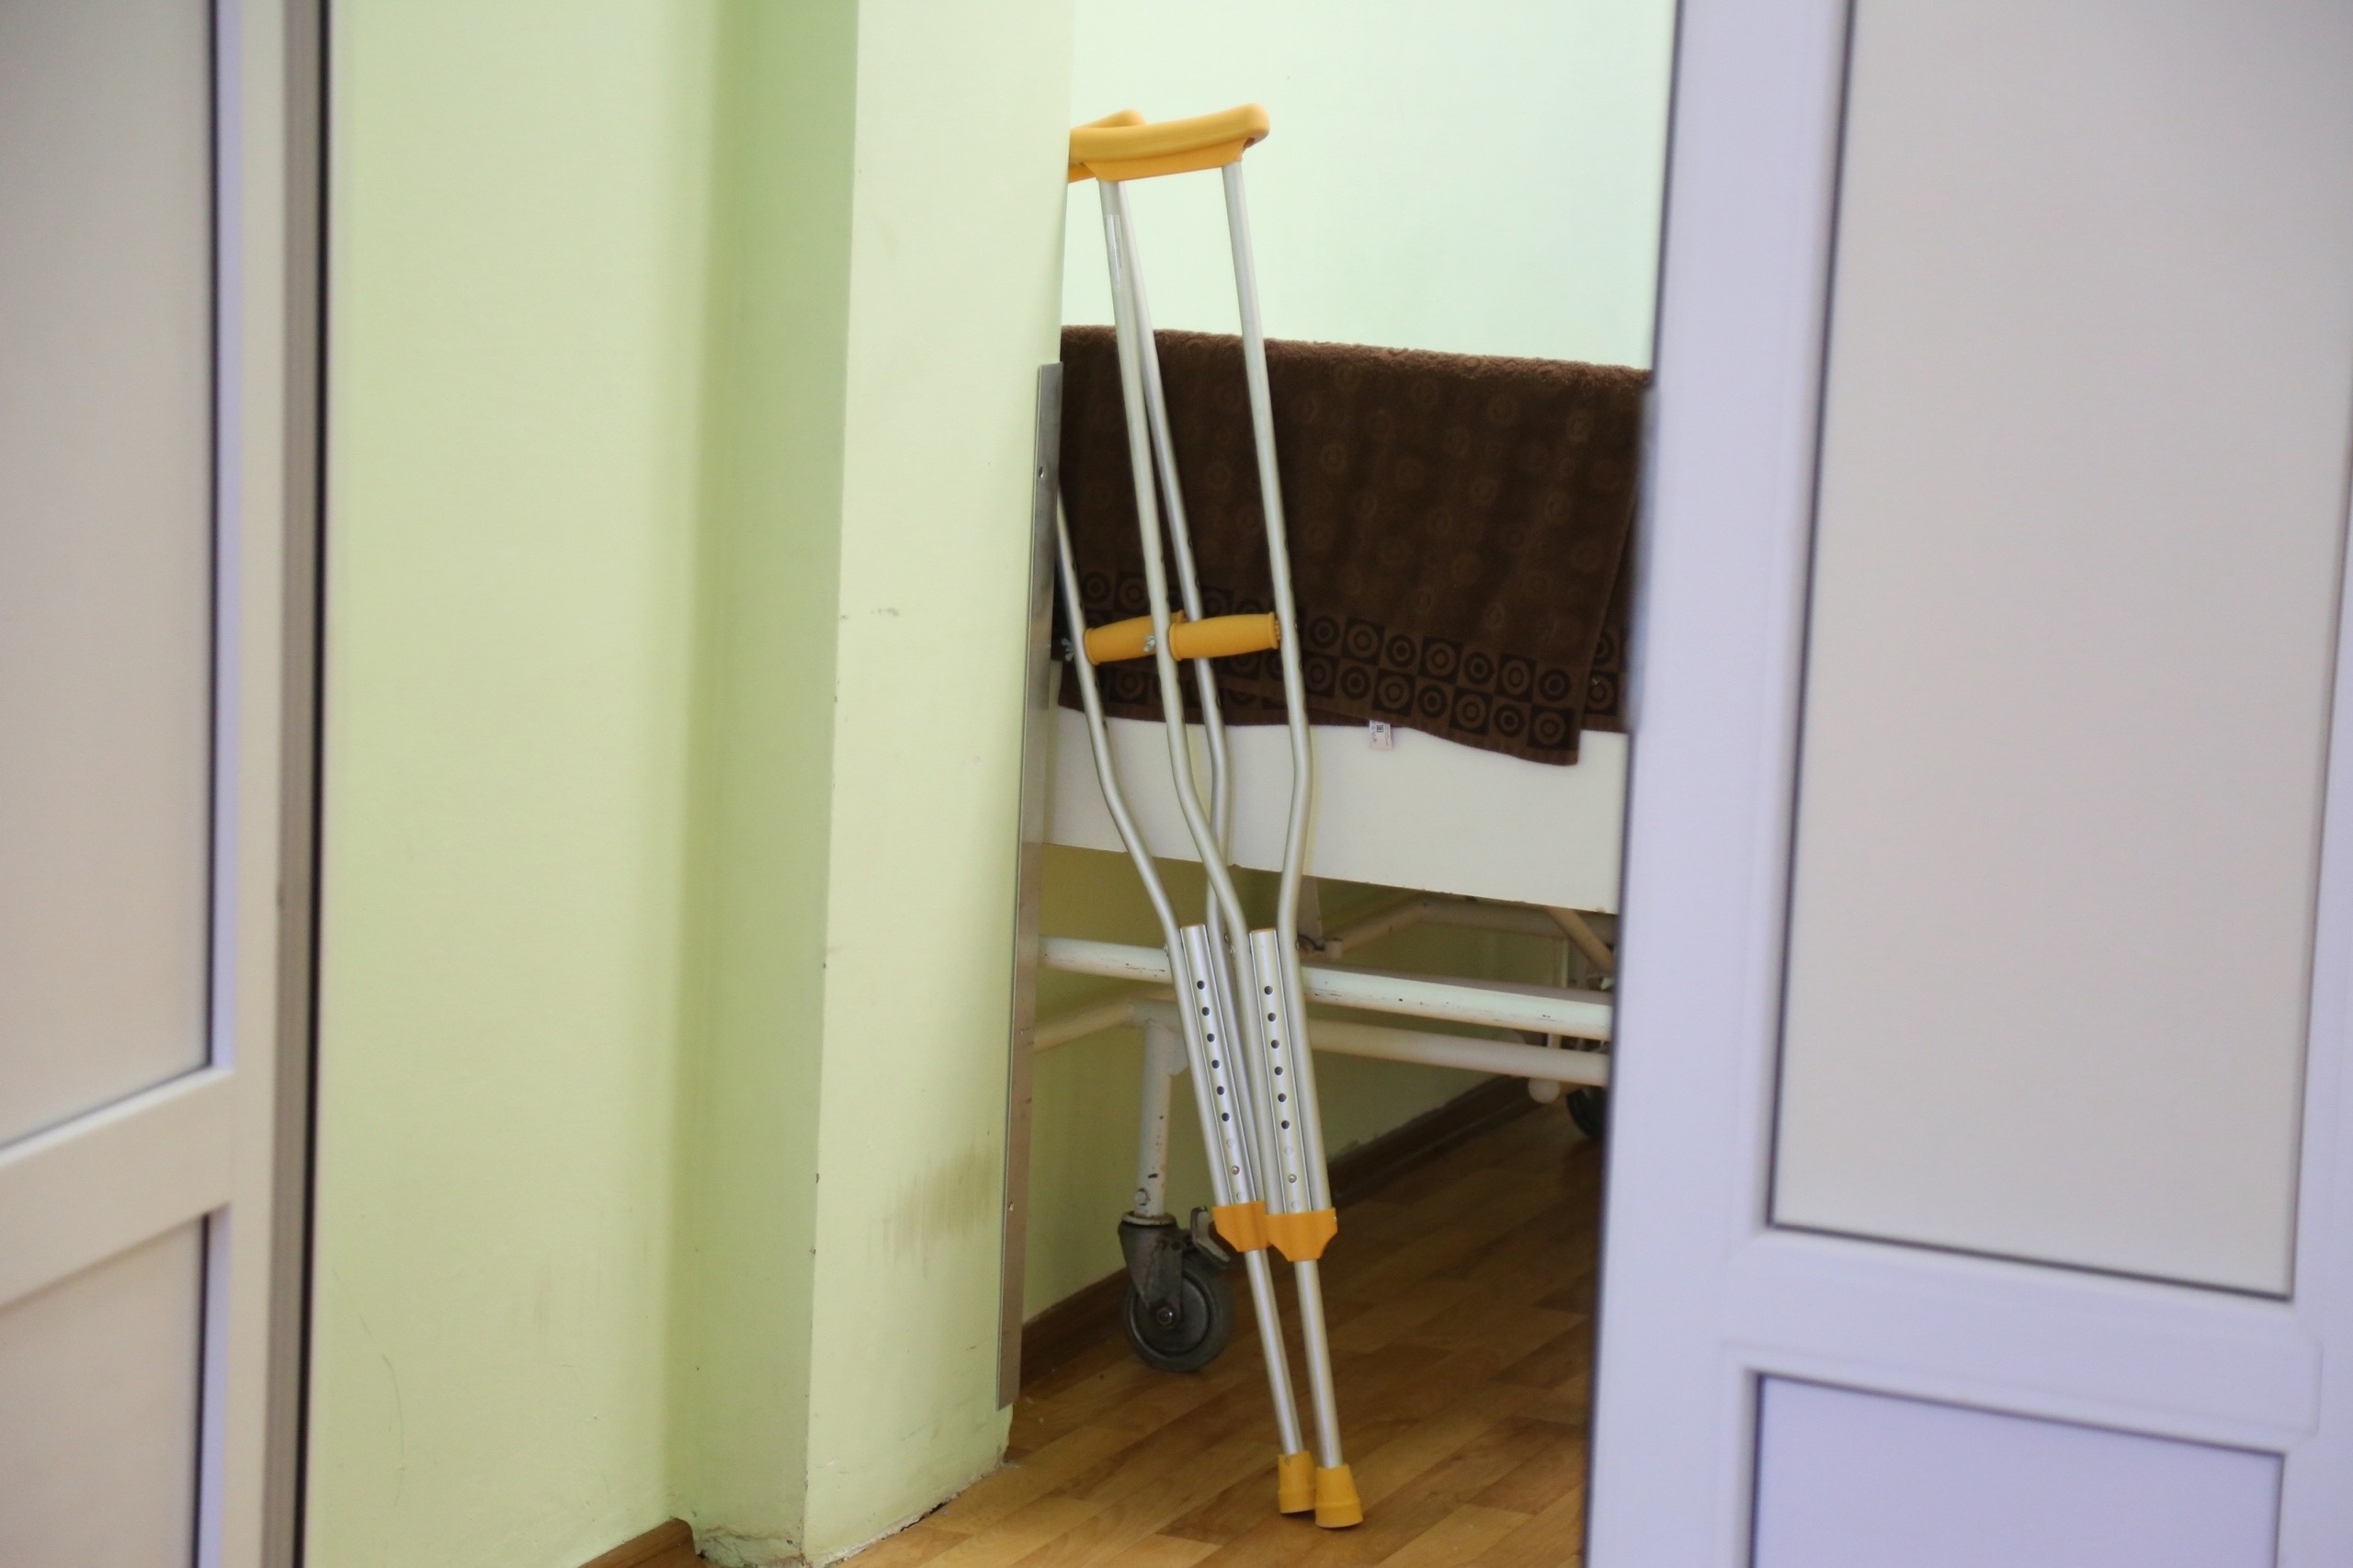 Жителю Алексина ампутировали часть ноги из-за травмы на предприятии